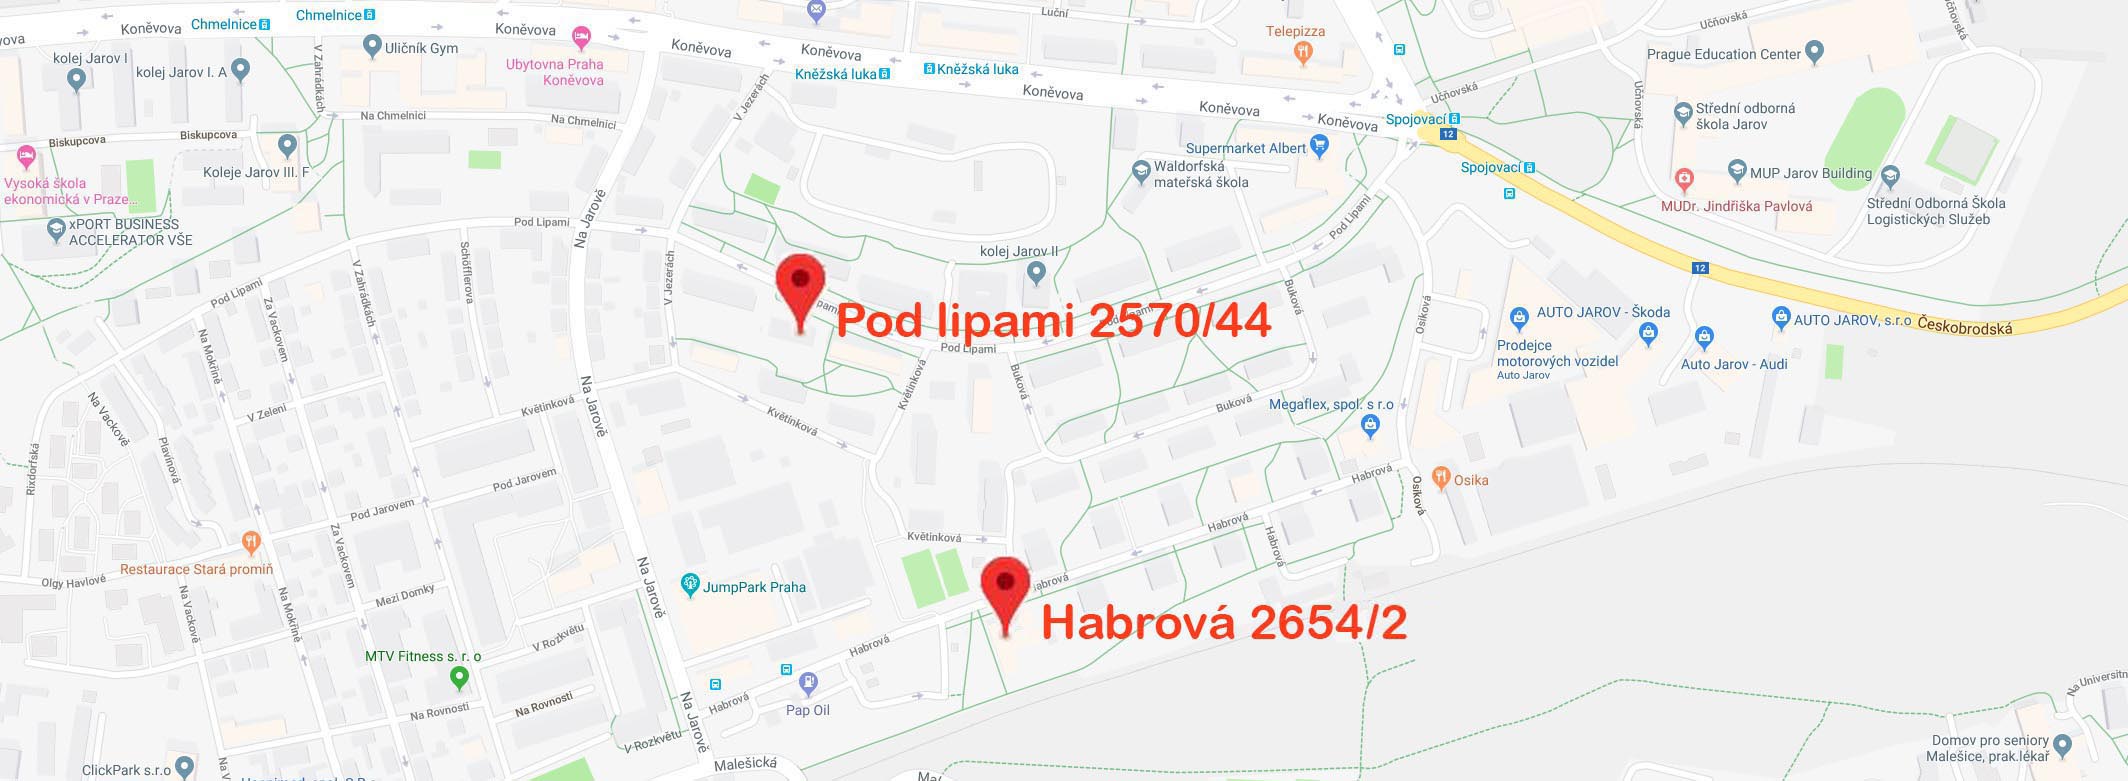 Mapa - Ošetřovatelský domov Praha 3